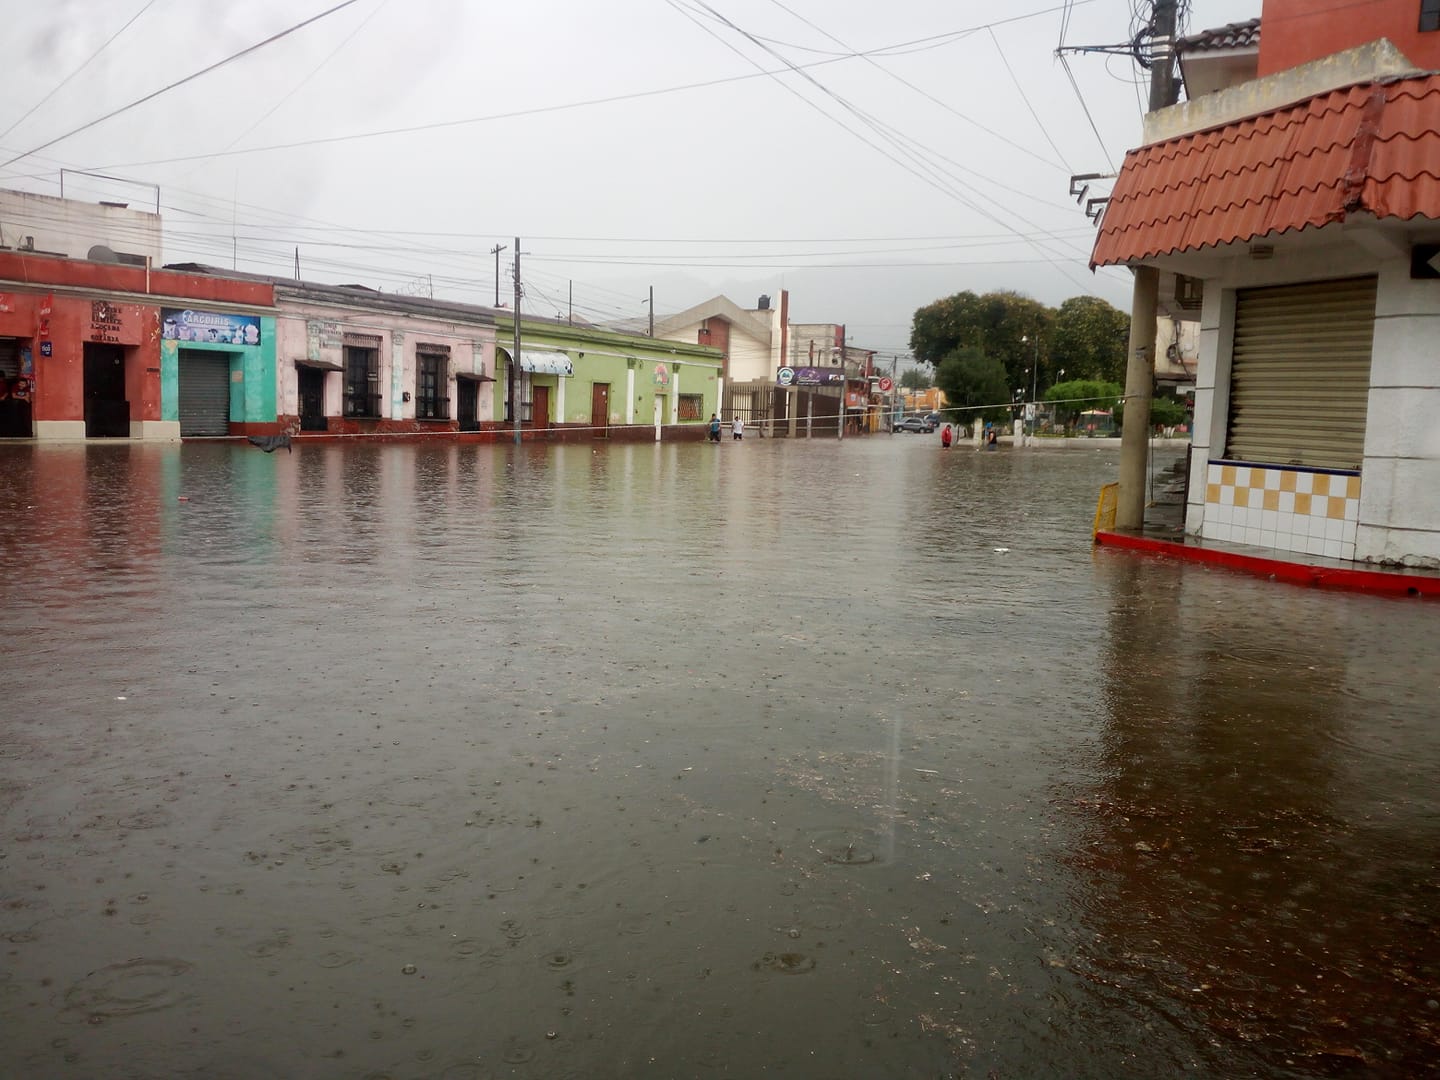 El Barrio Calvario zona 1 fue uno de los afectados por las inundaciones de este 26 de julio. (Foto Prensa Libre: Cortesía)